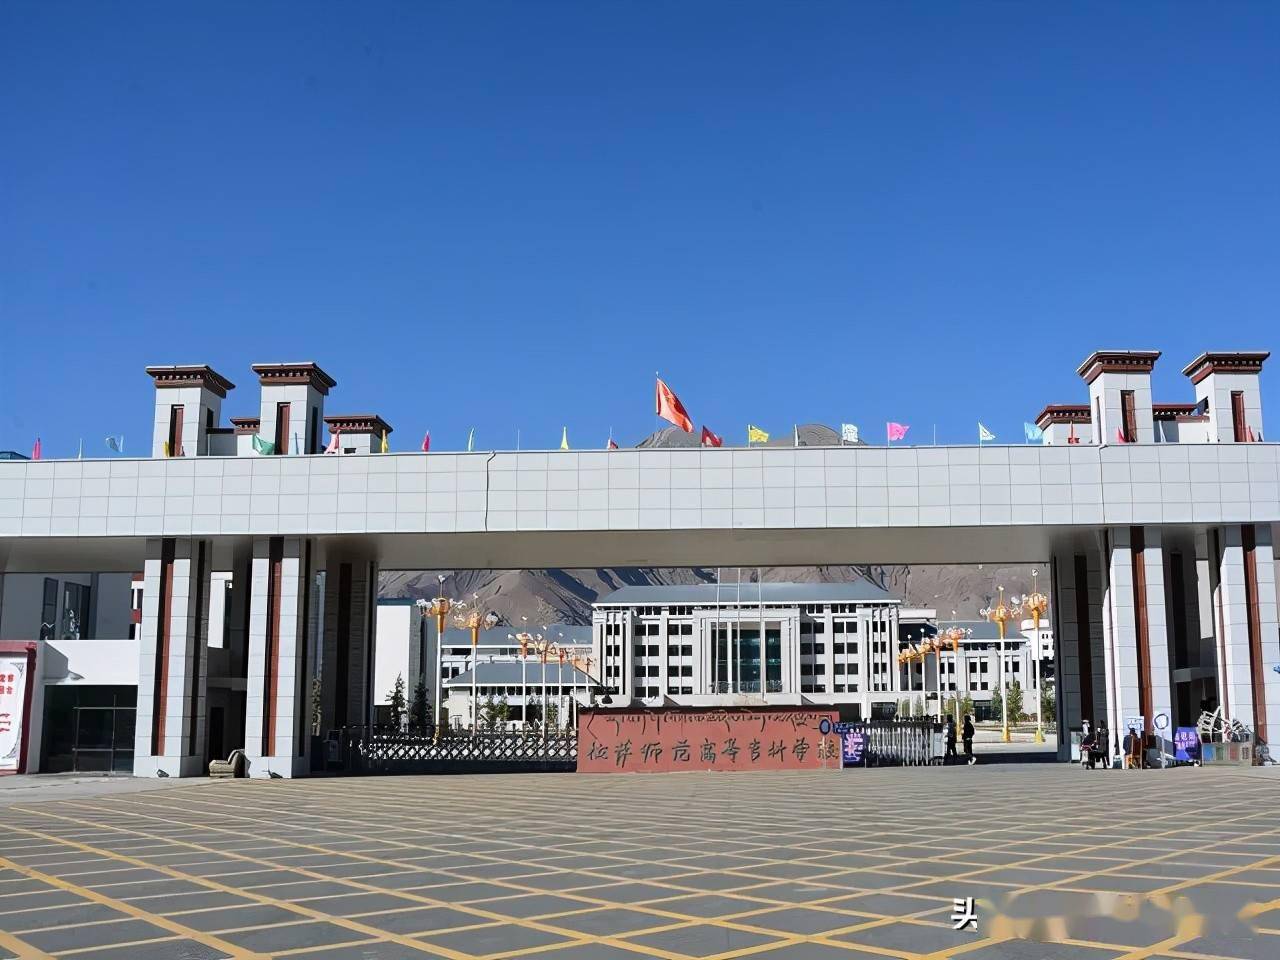 07 畅 游 校 园 西藏职业技术学院 西藏职业技术学院,是于2005年7